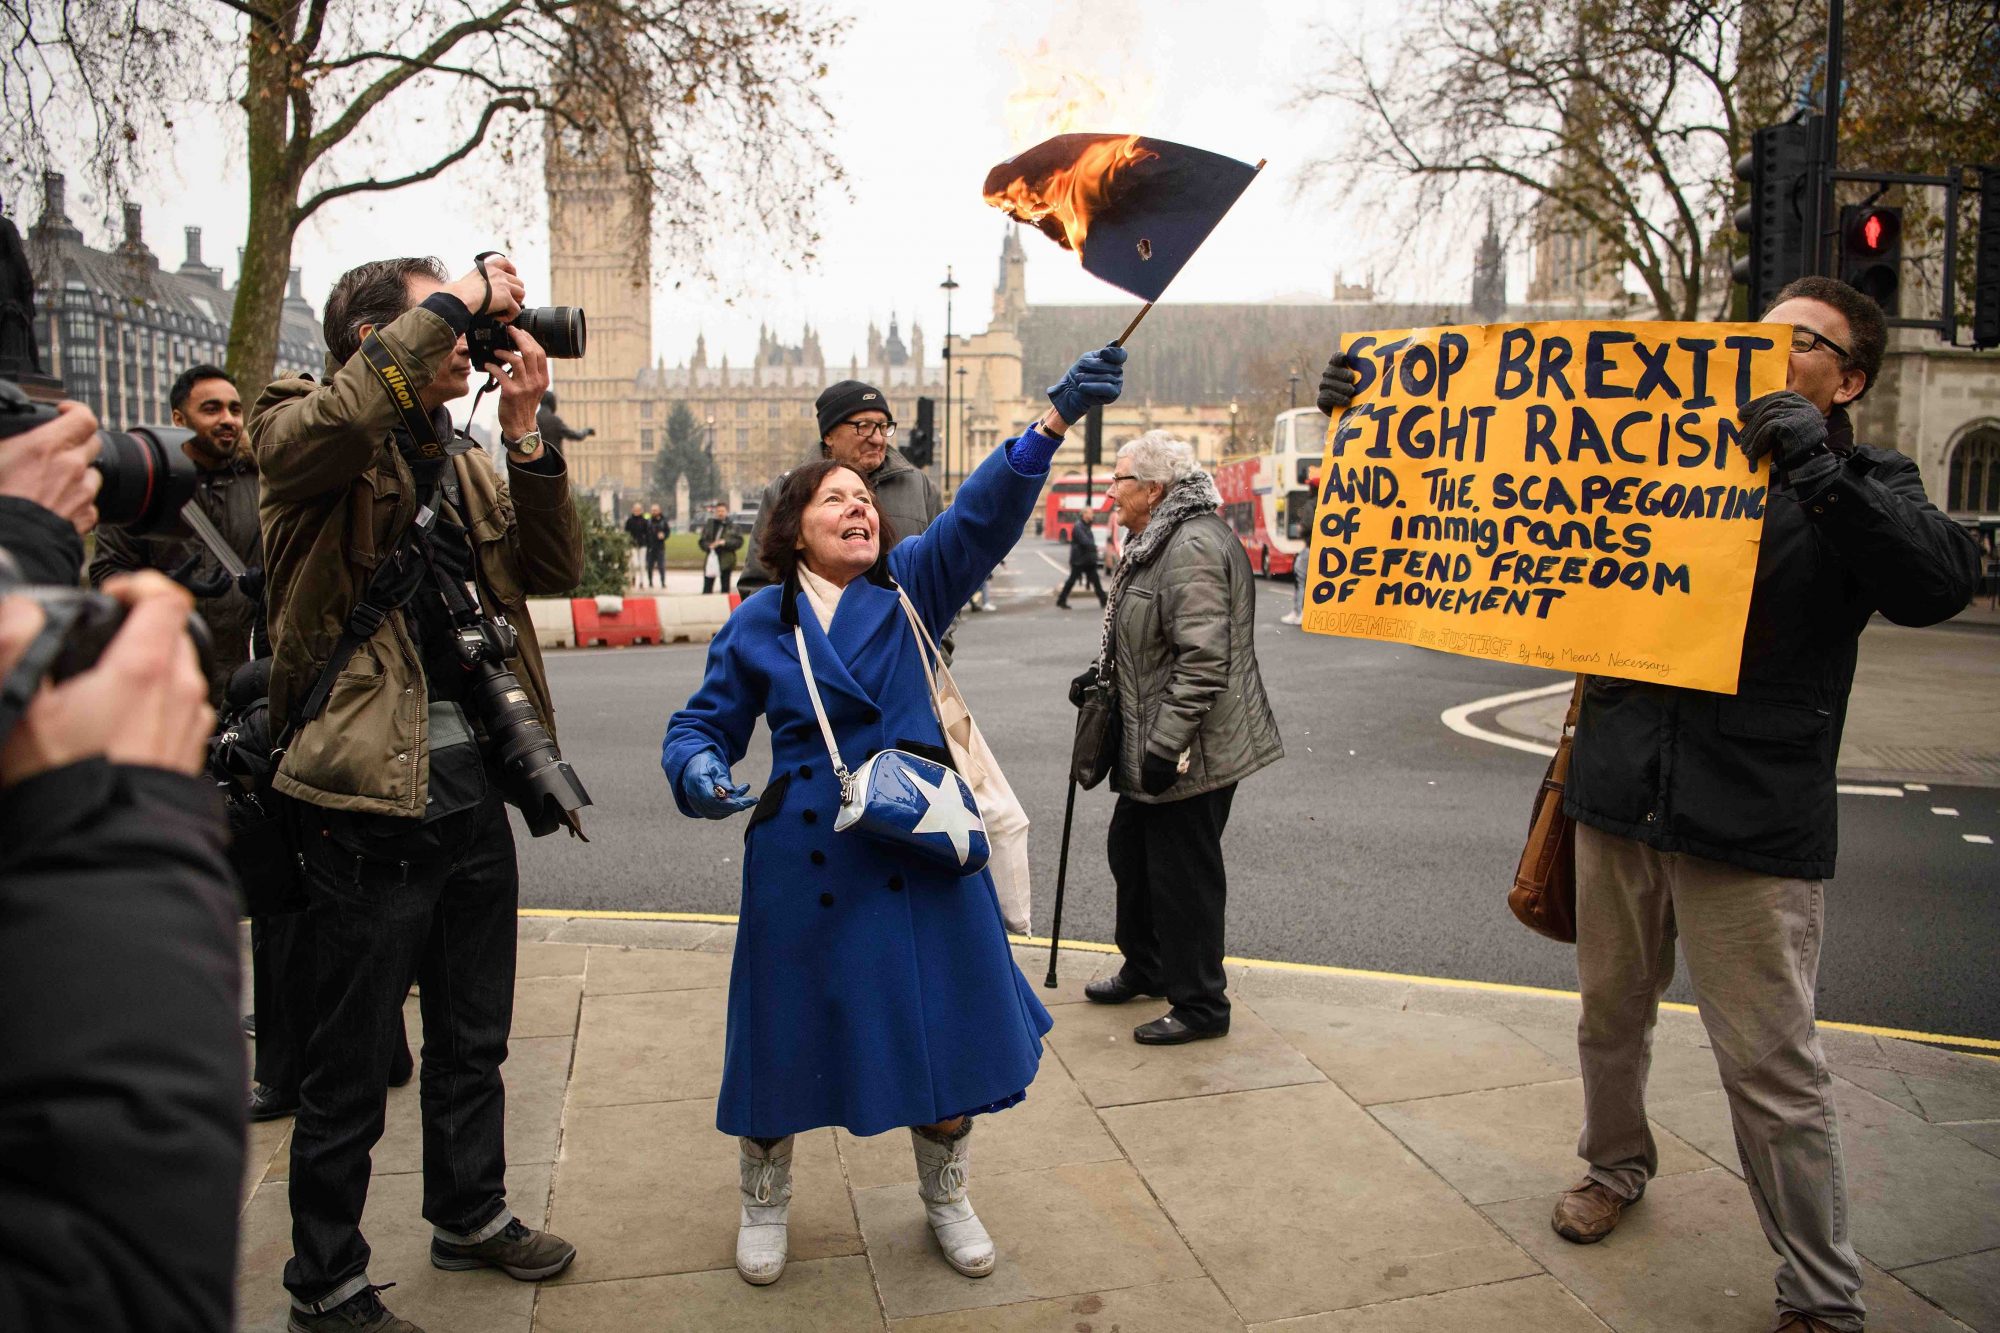 Mujer quema bandera de la Unión Europea (centro), hombre en contra de Brexit sostiene pancarta (derecha).